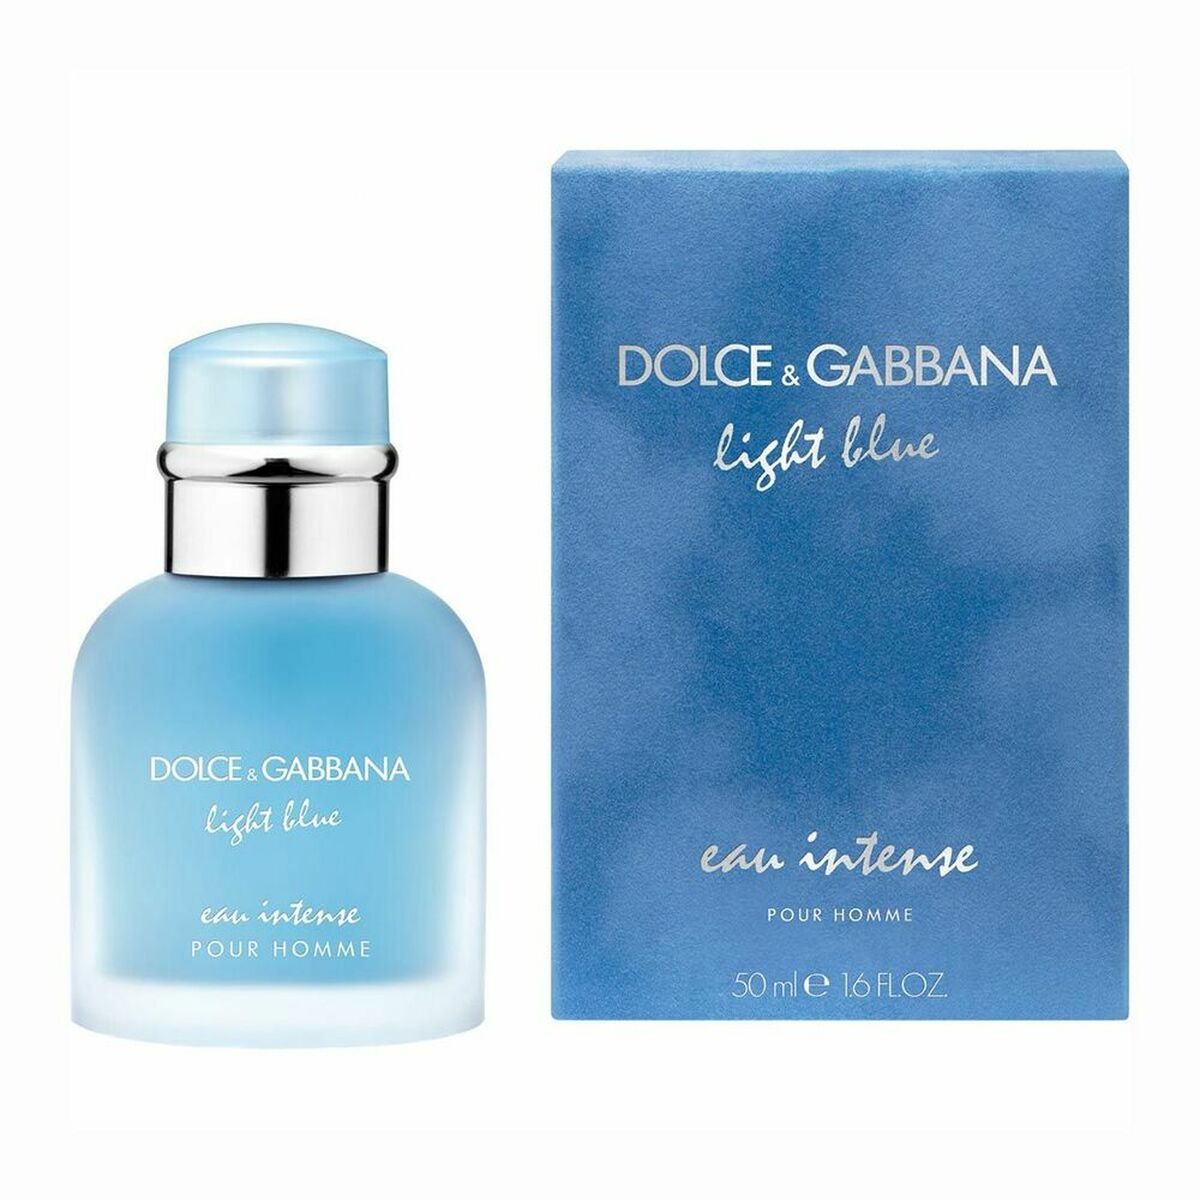 Men's Perfume Light Blue Homme Intense Dolce & Gabbana Light Blue eau